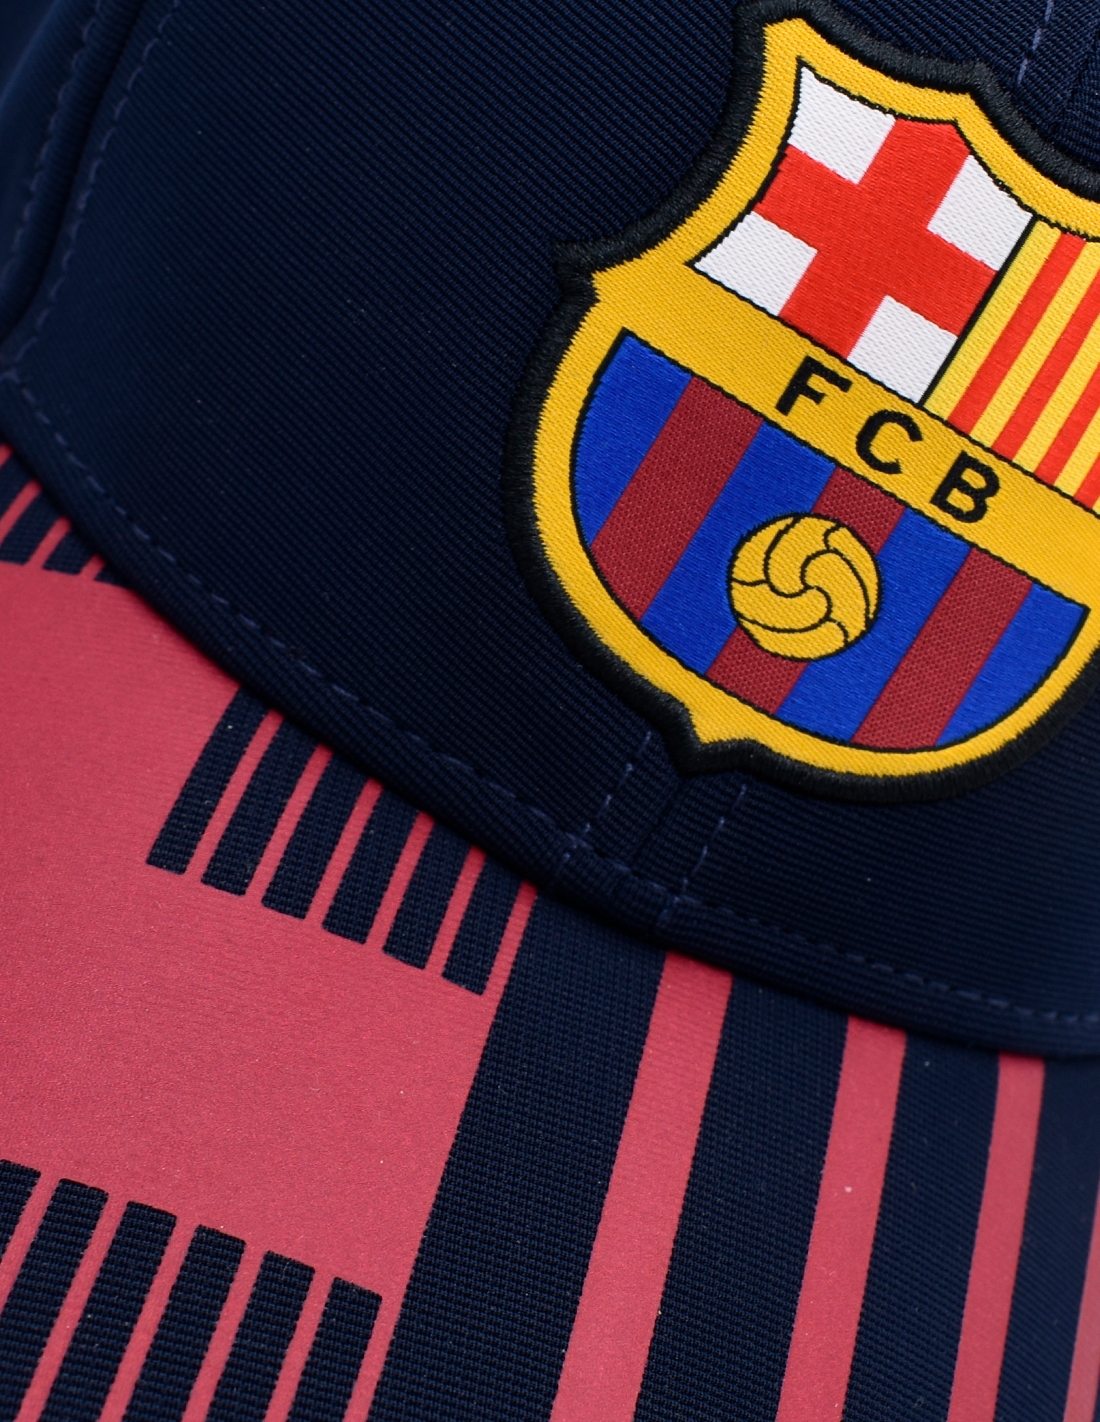 FCB FC Barcelona Gorra con diseño en Relieve